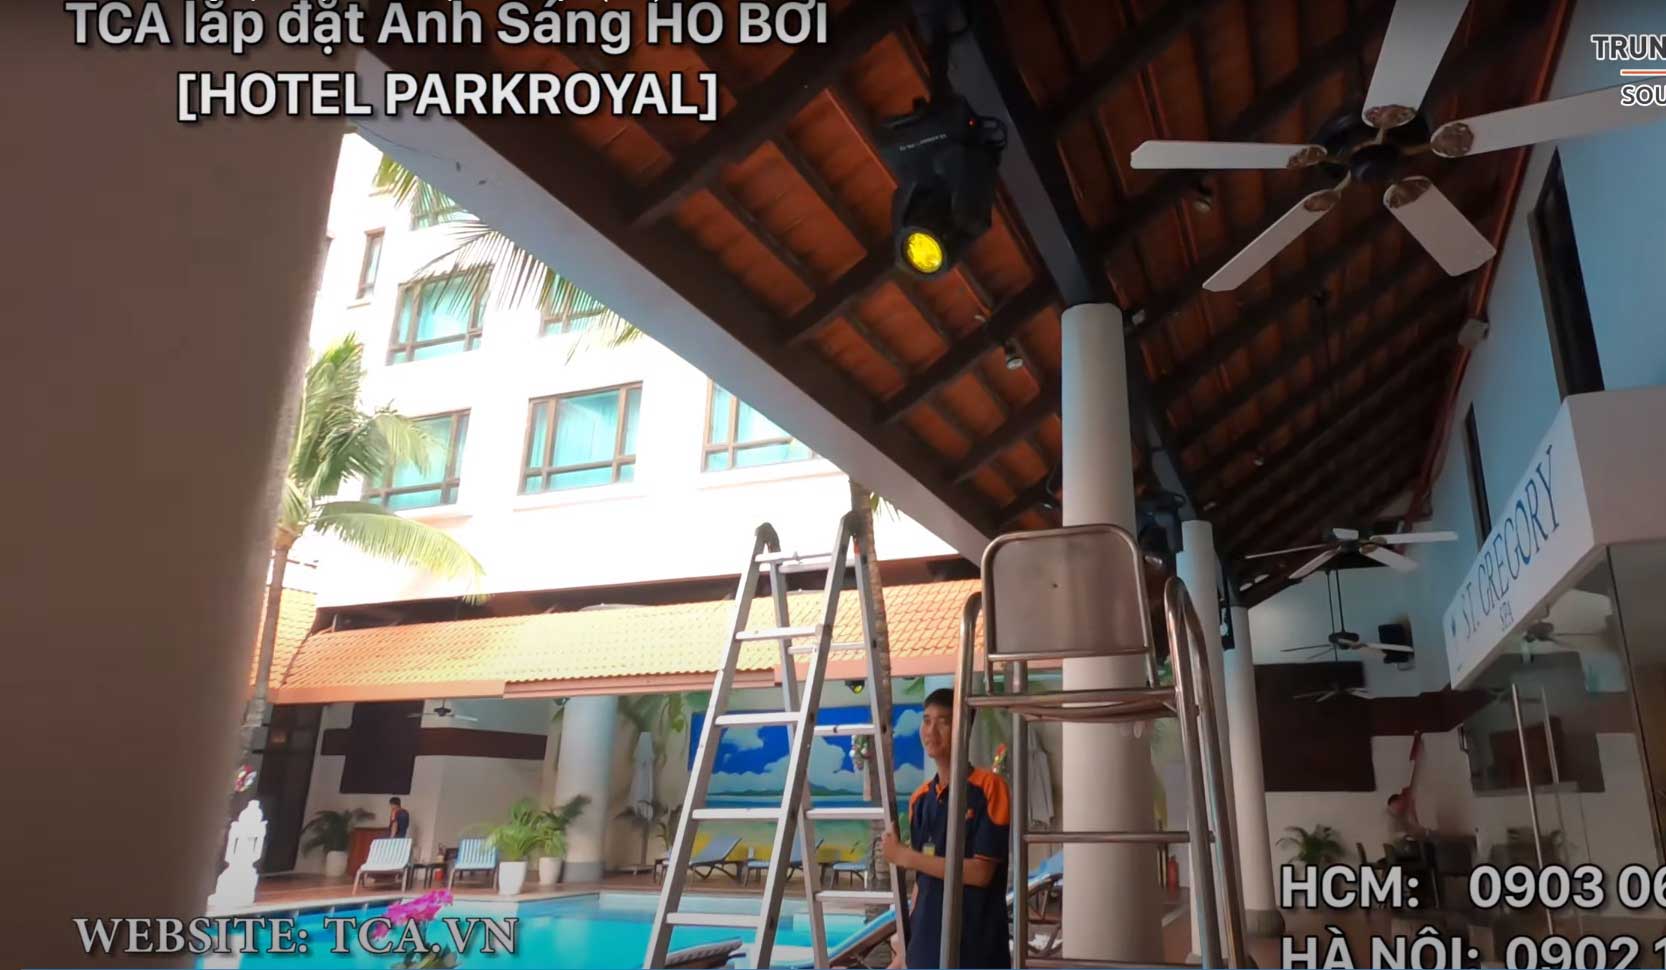 Lắp đặt âm thanh ánh sáng hồ bơi ngoài trời tại: Khách sạn ParkRoyal Sài Gòn